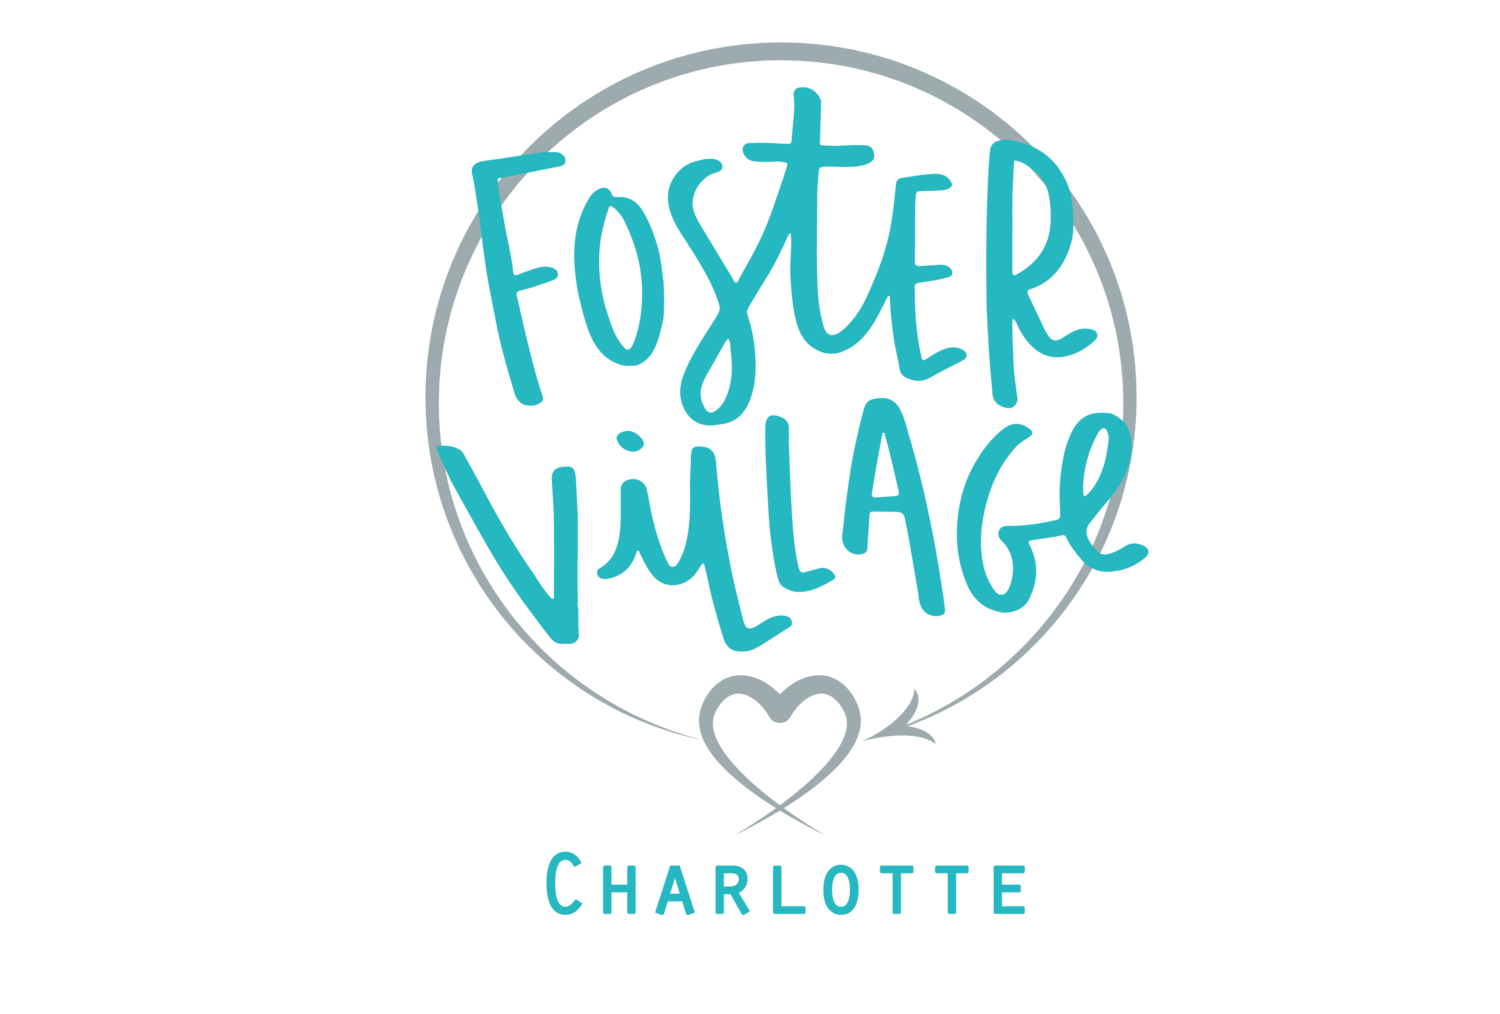 FV_Charlotte_logo.png